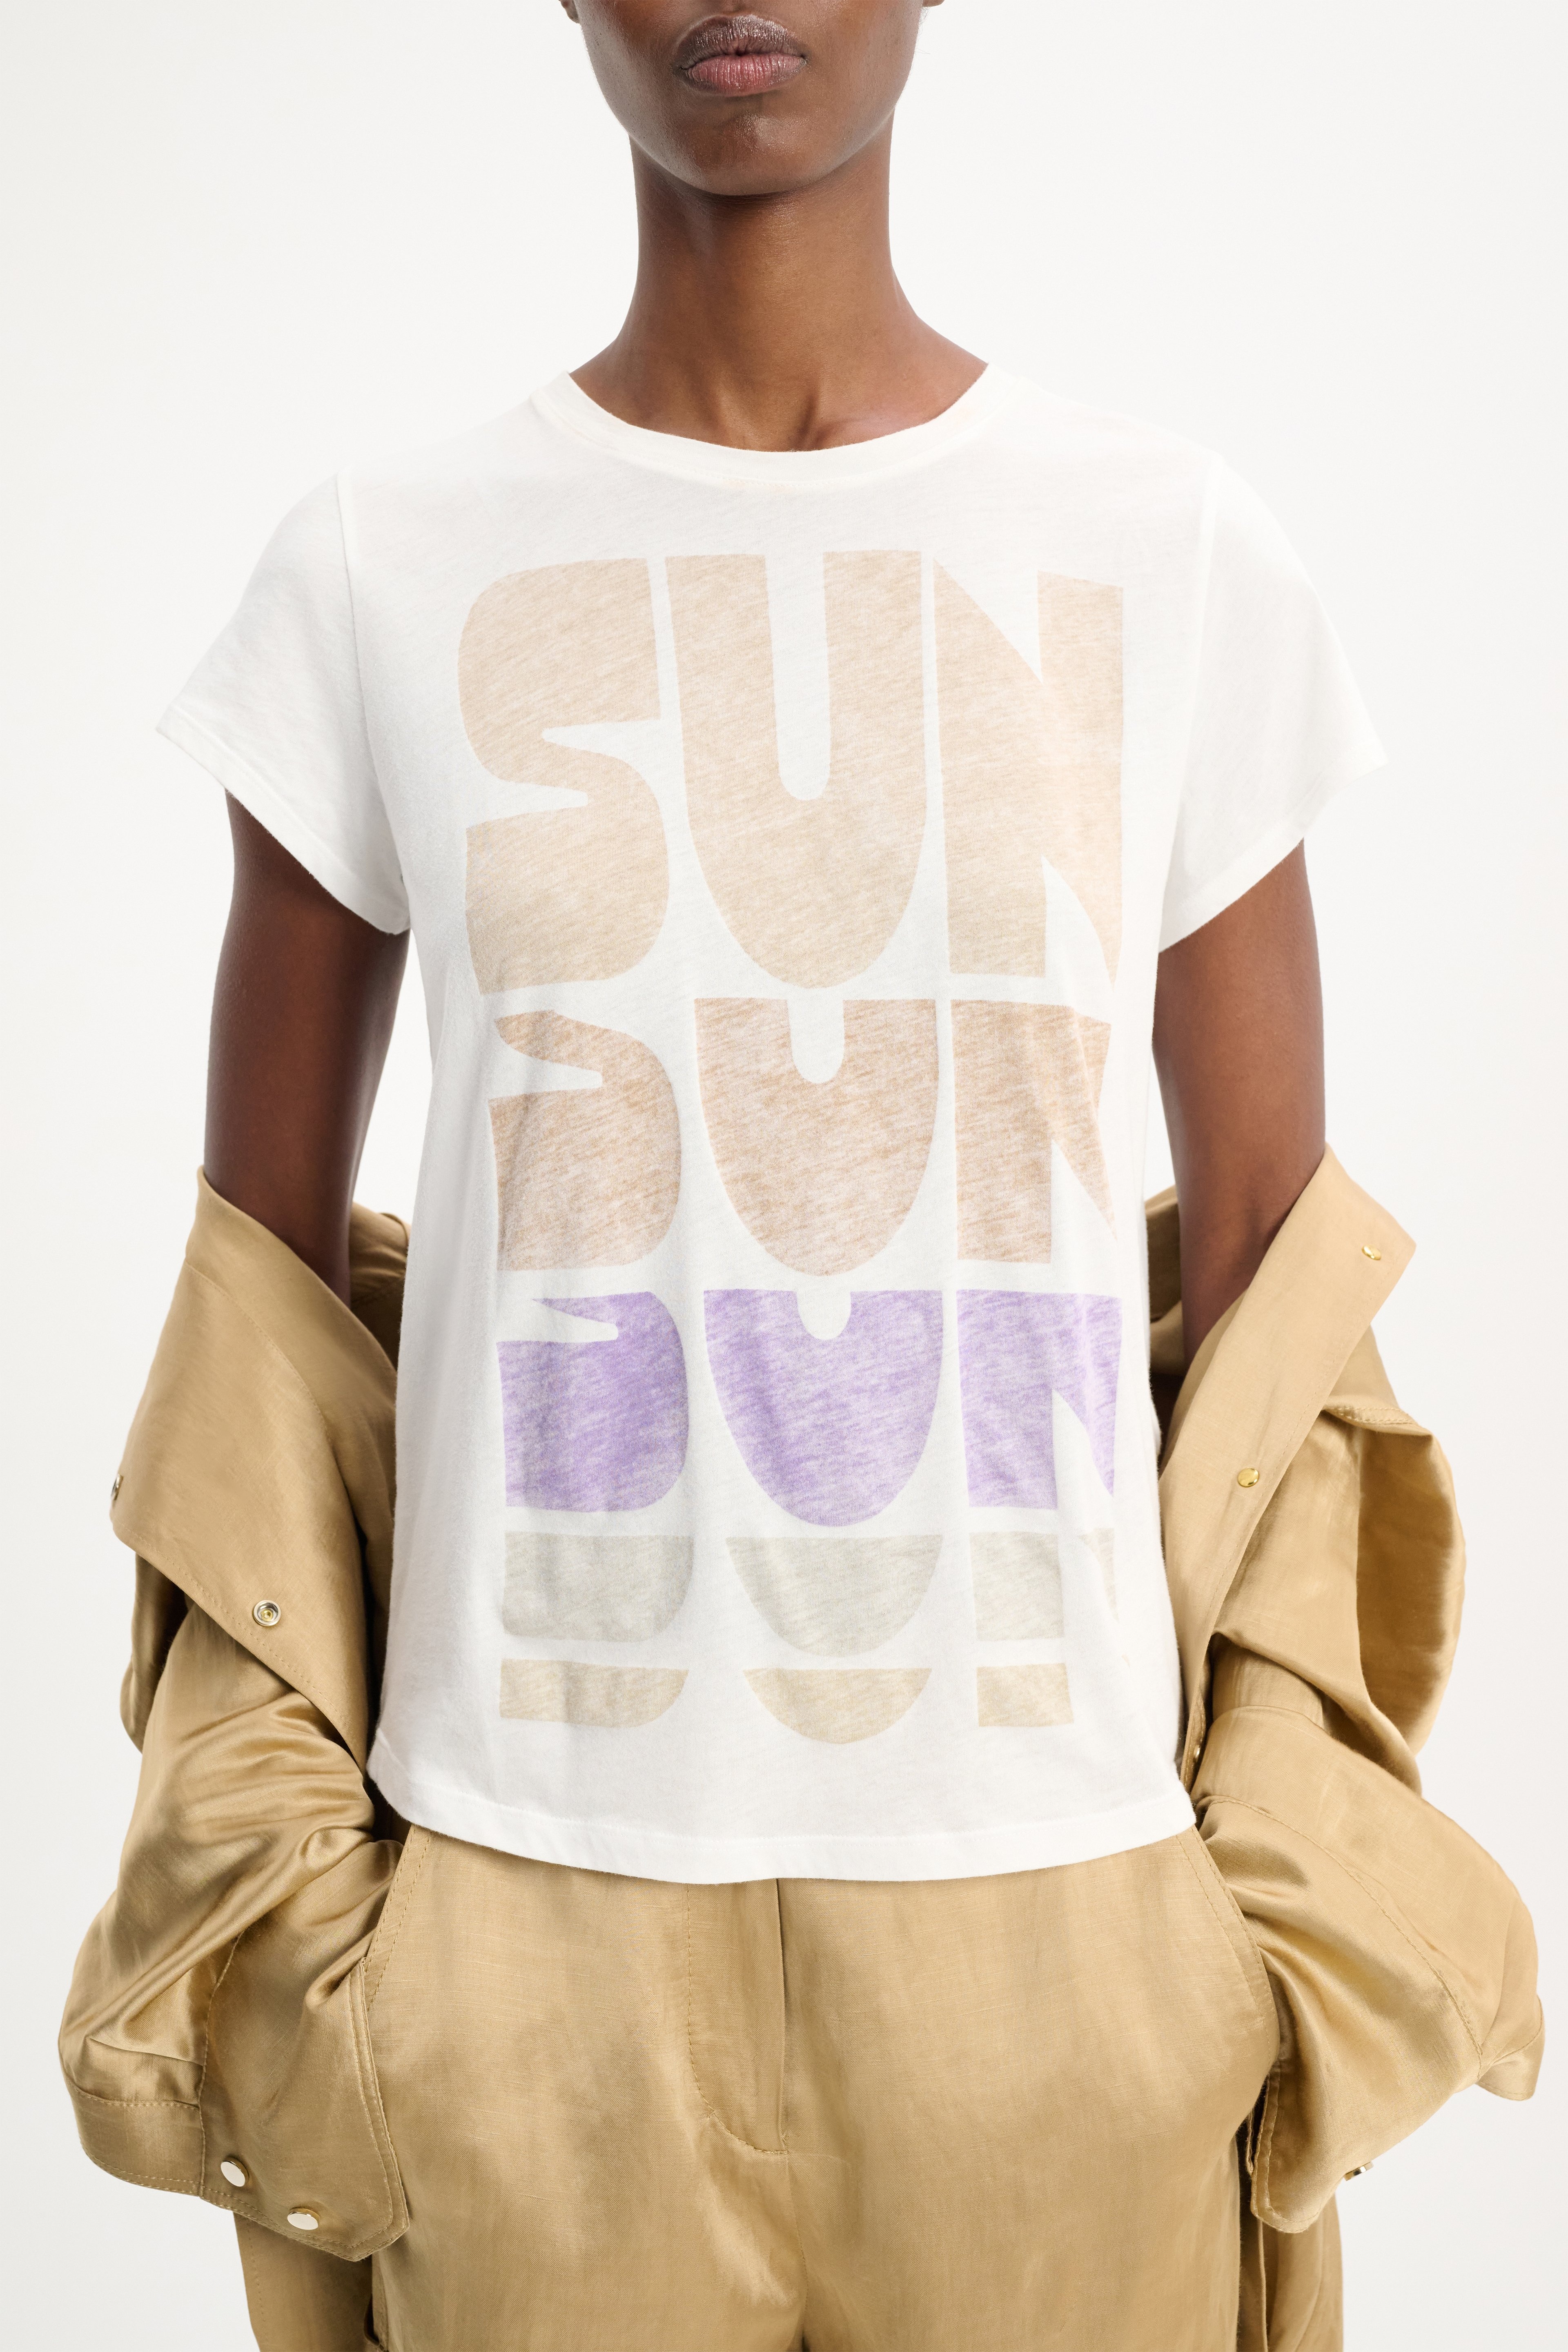 SUN CHILD shirt - 3